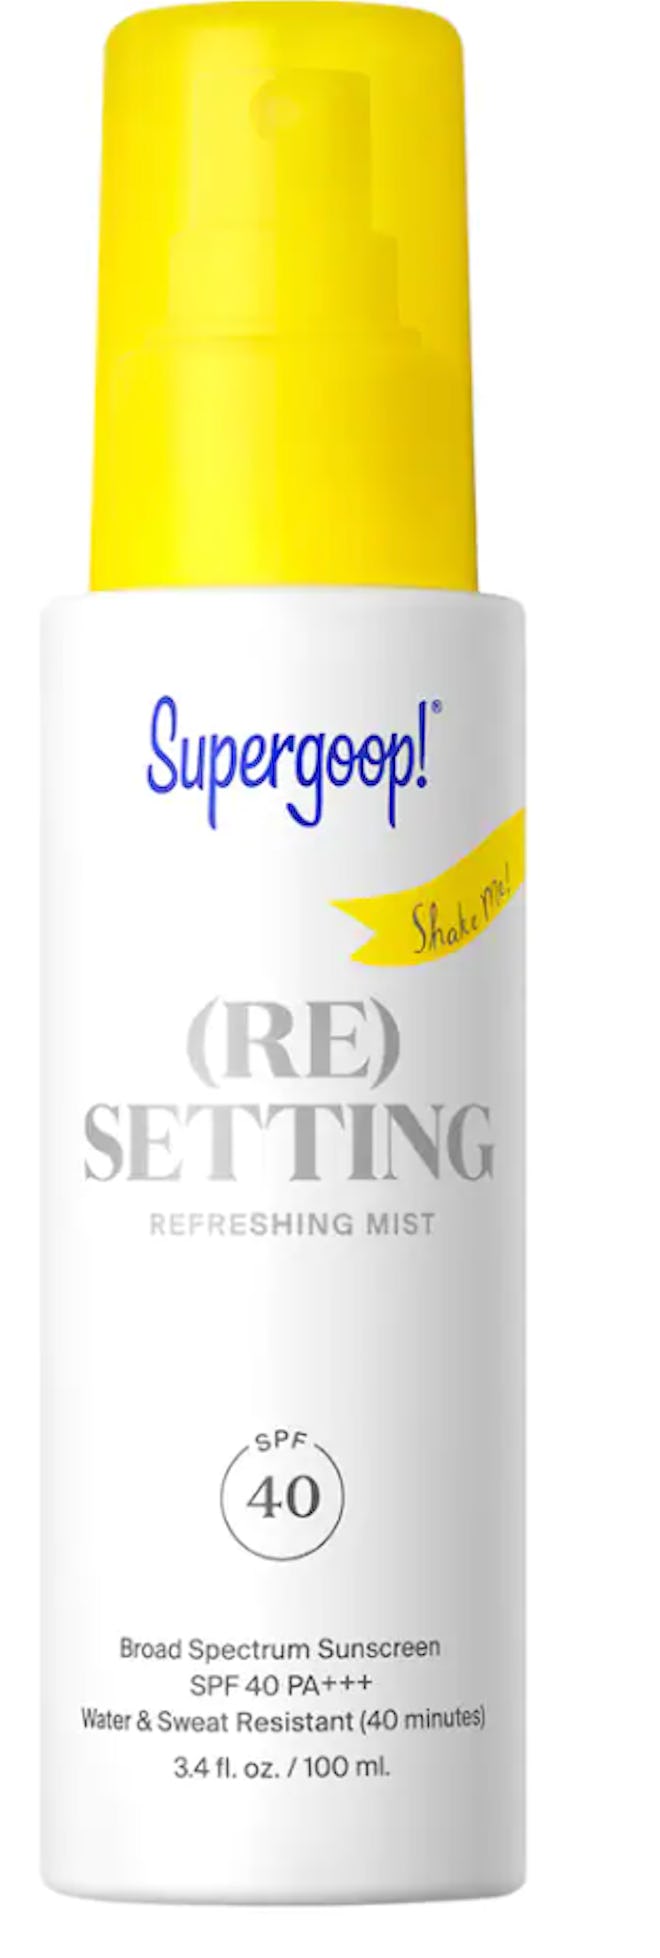 Supergoop! (Re) Setting Refreshing Mist SPF 40 for cakey skin